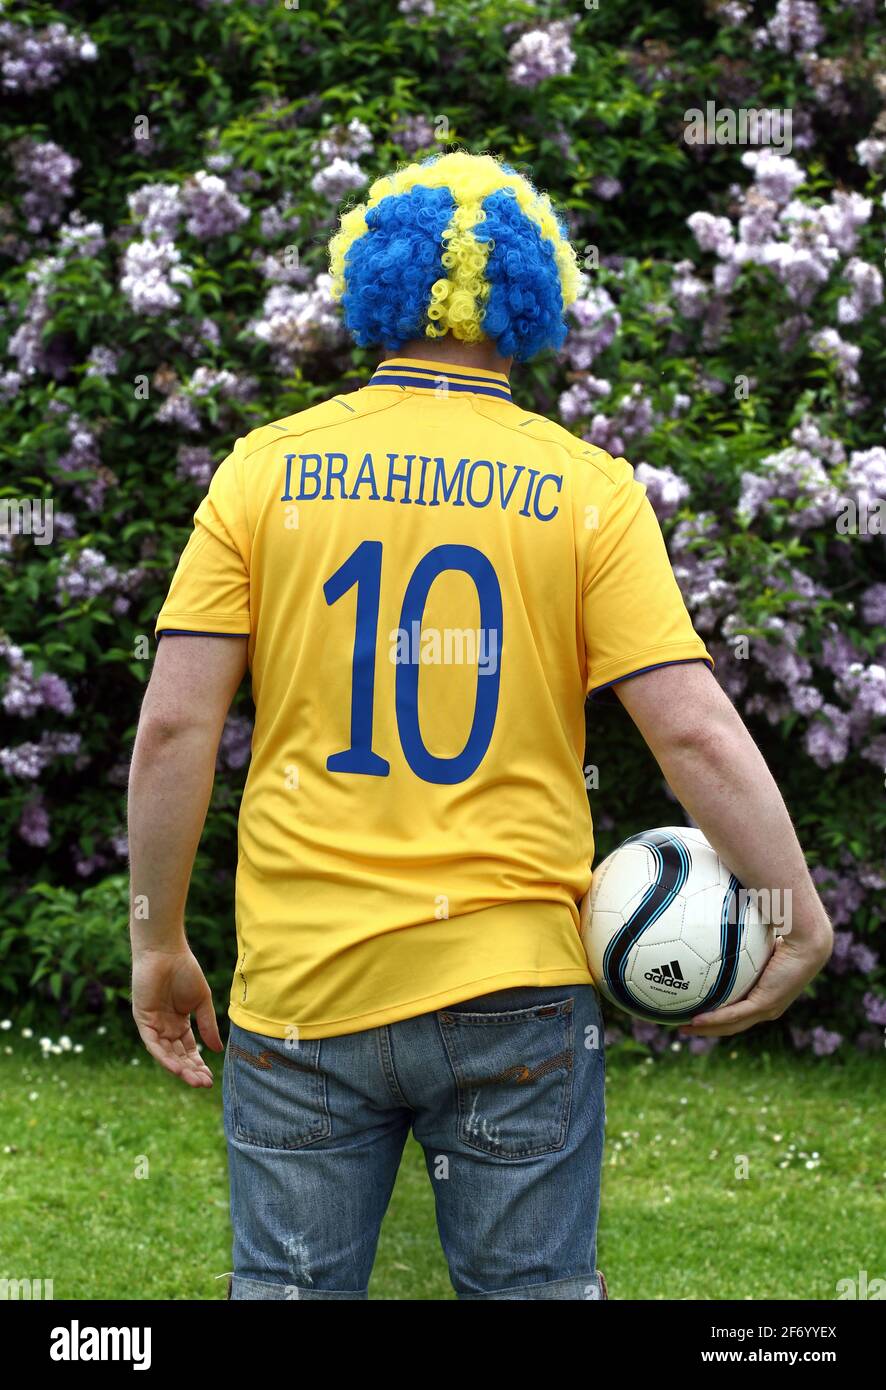 futbolista sueco que lleva una camiseta de la selección nacional de Zlatan Ibrahimovic Fotografía de stock - Alamy